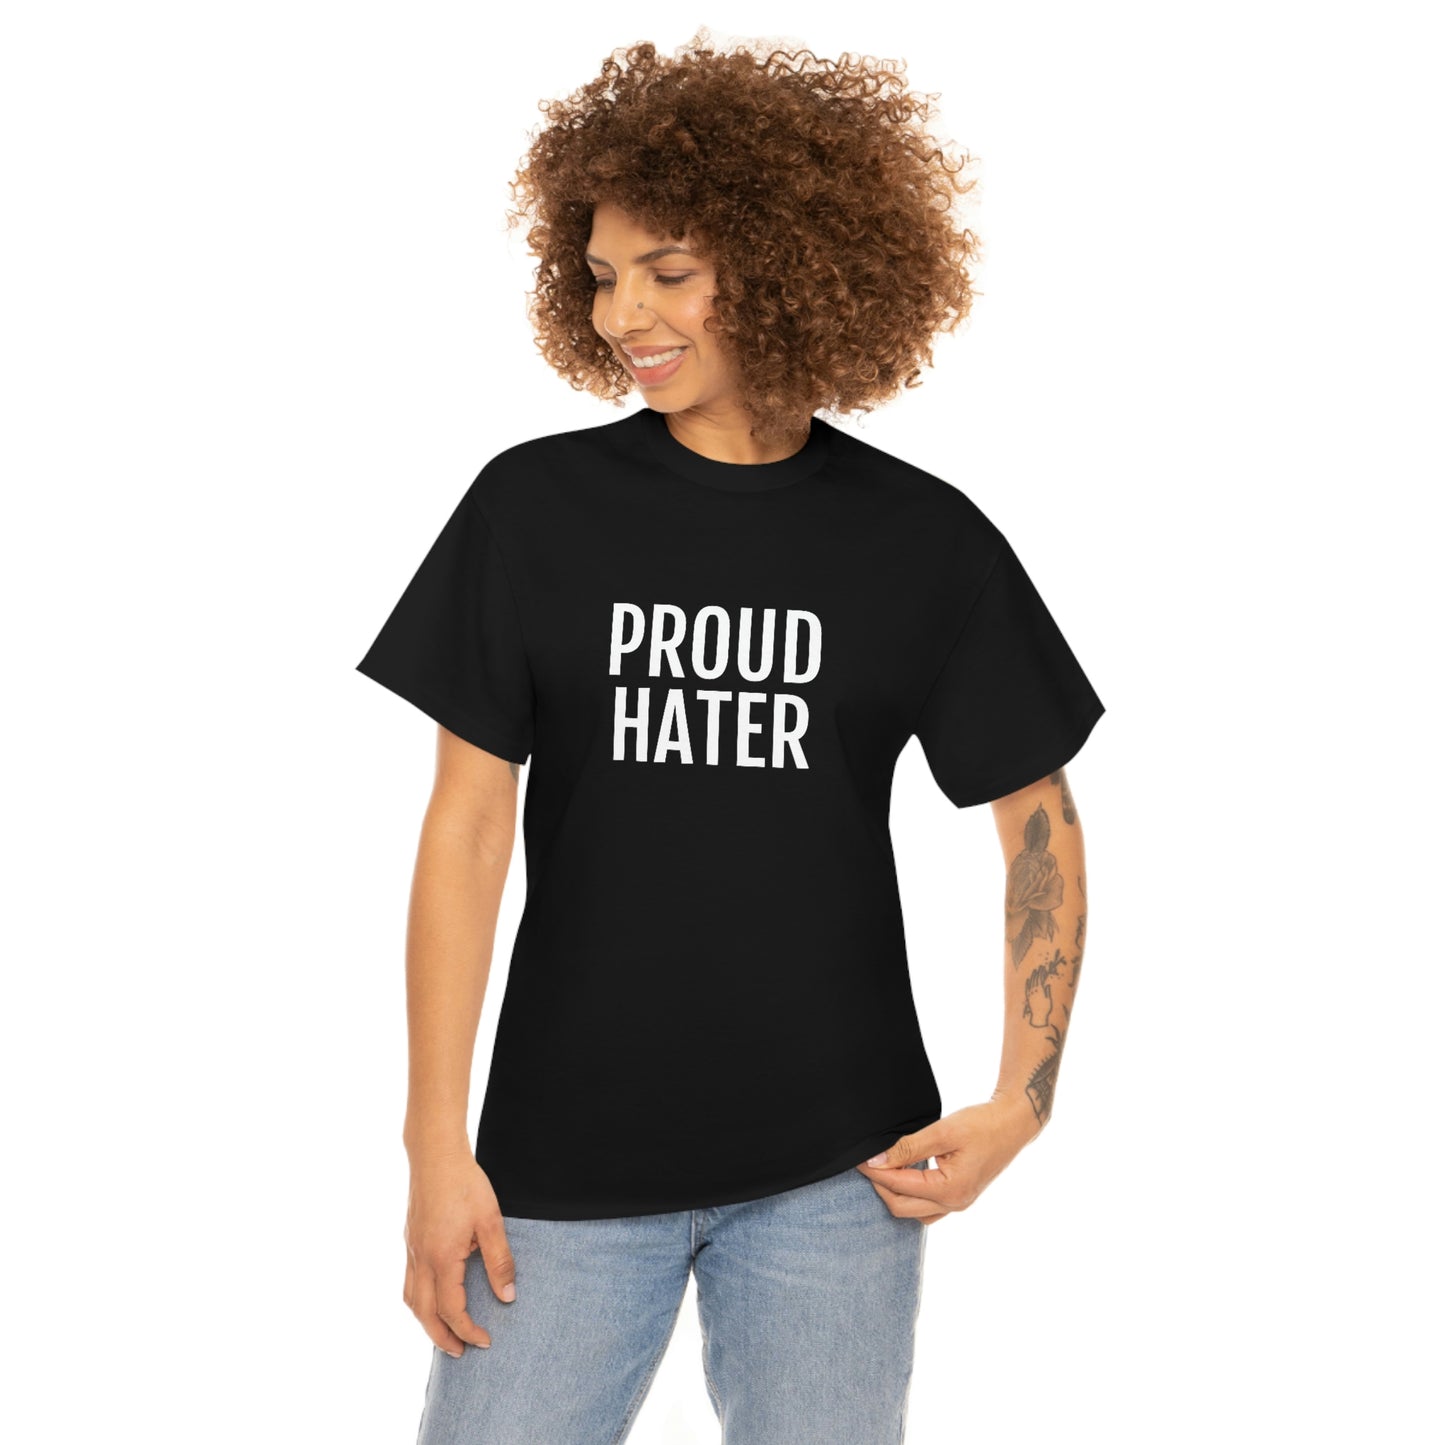 PROUD HATER T-SHIRT